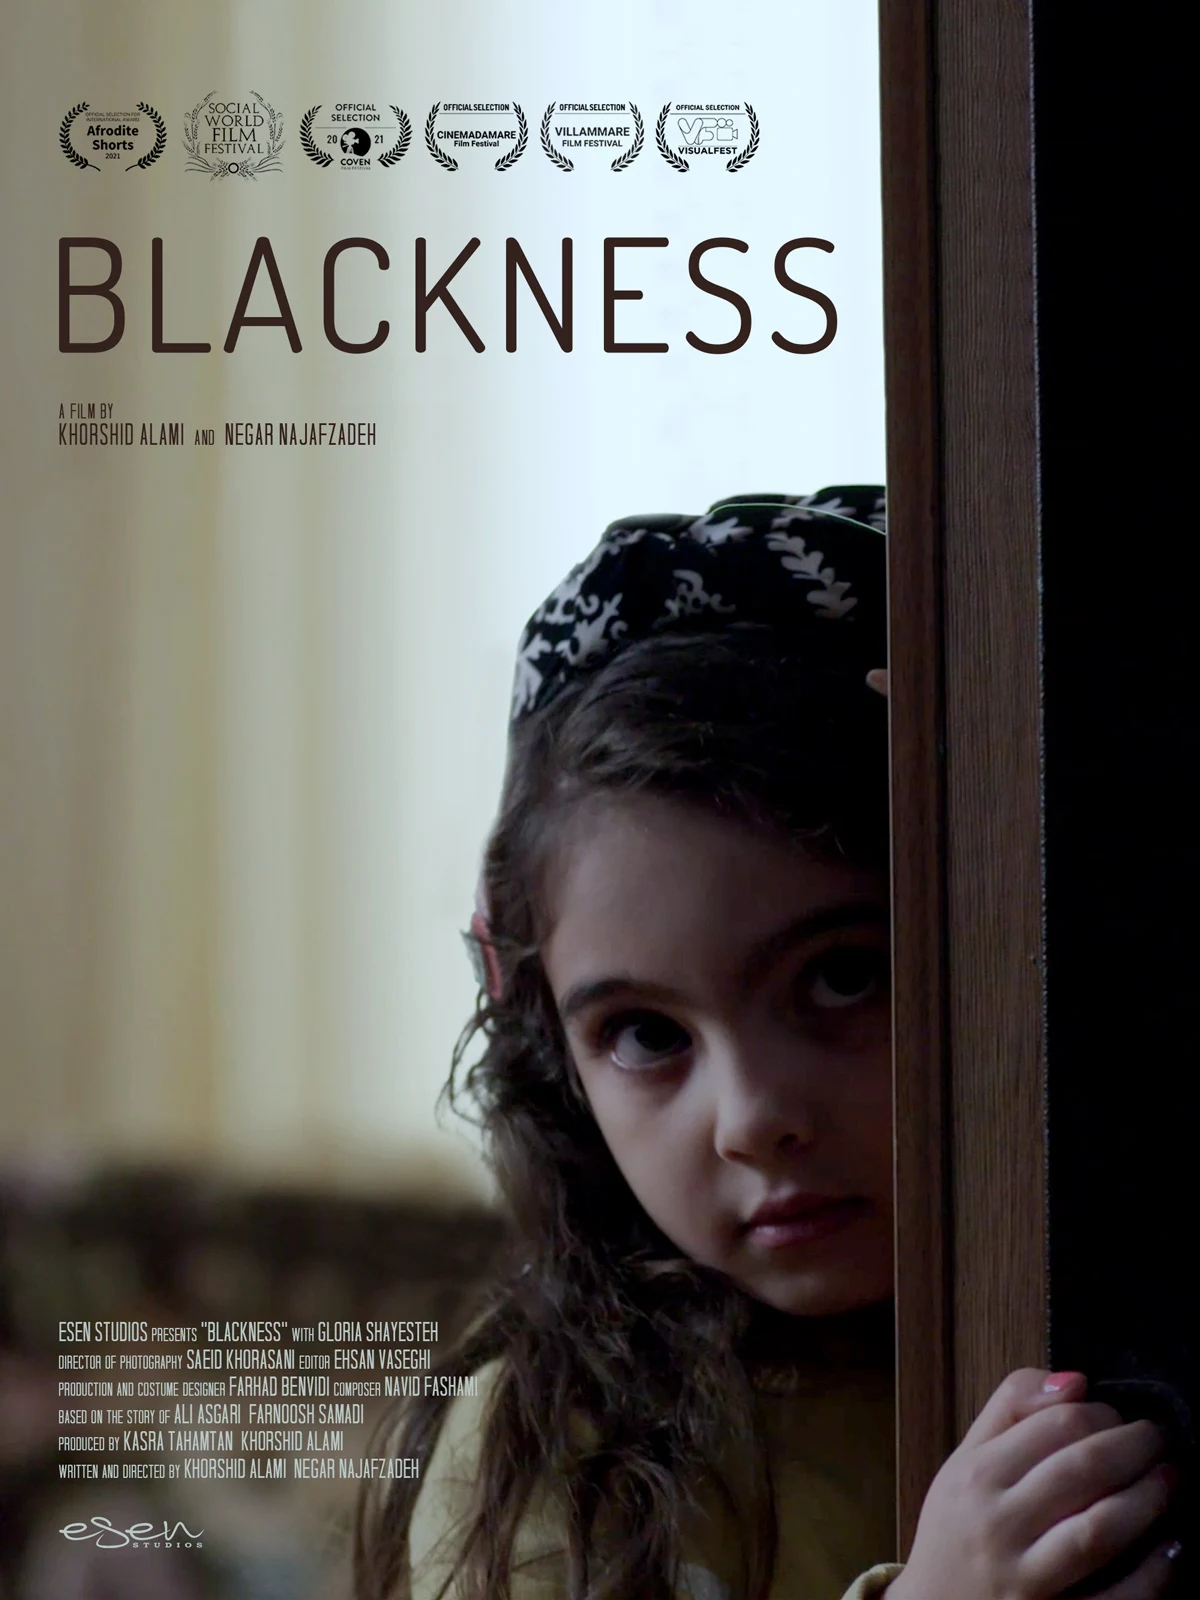 The Short film "Blackness" 